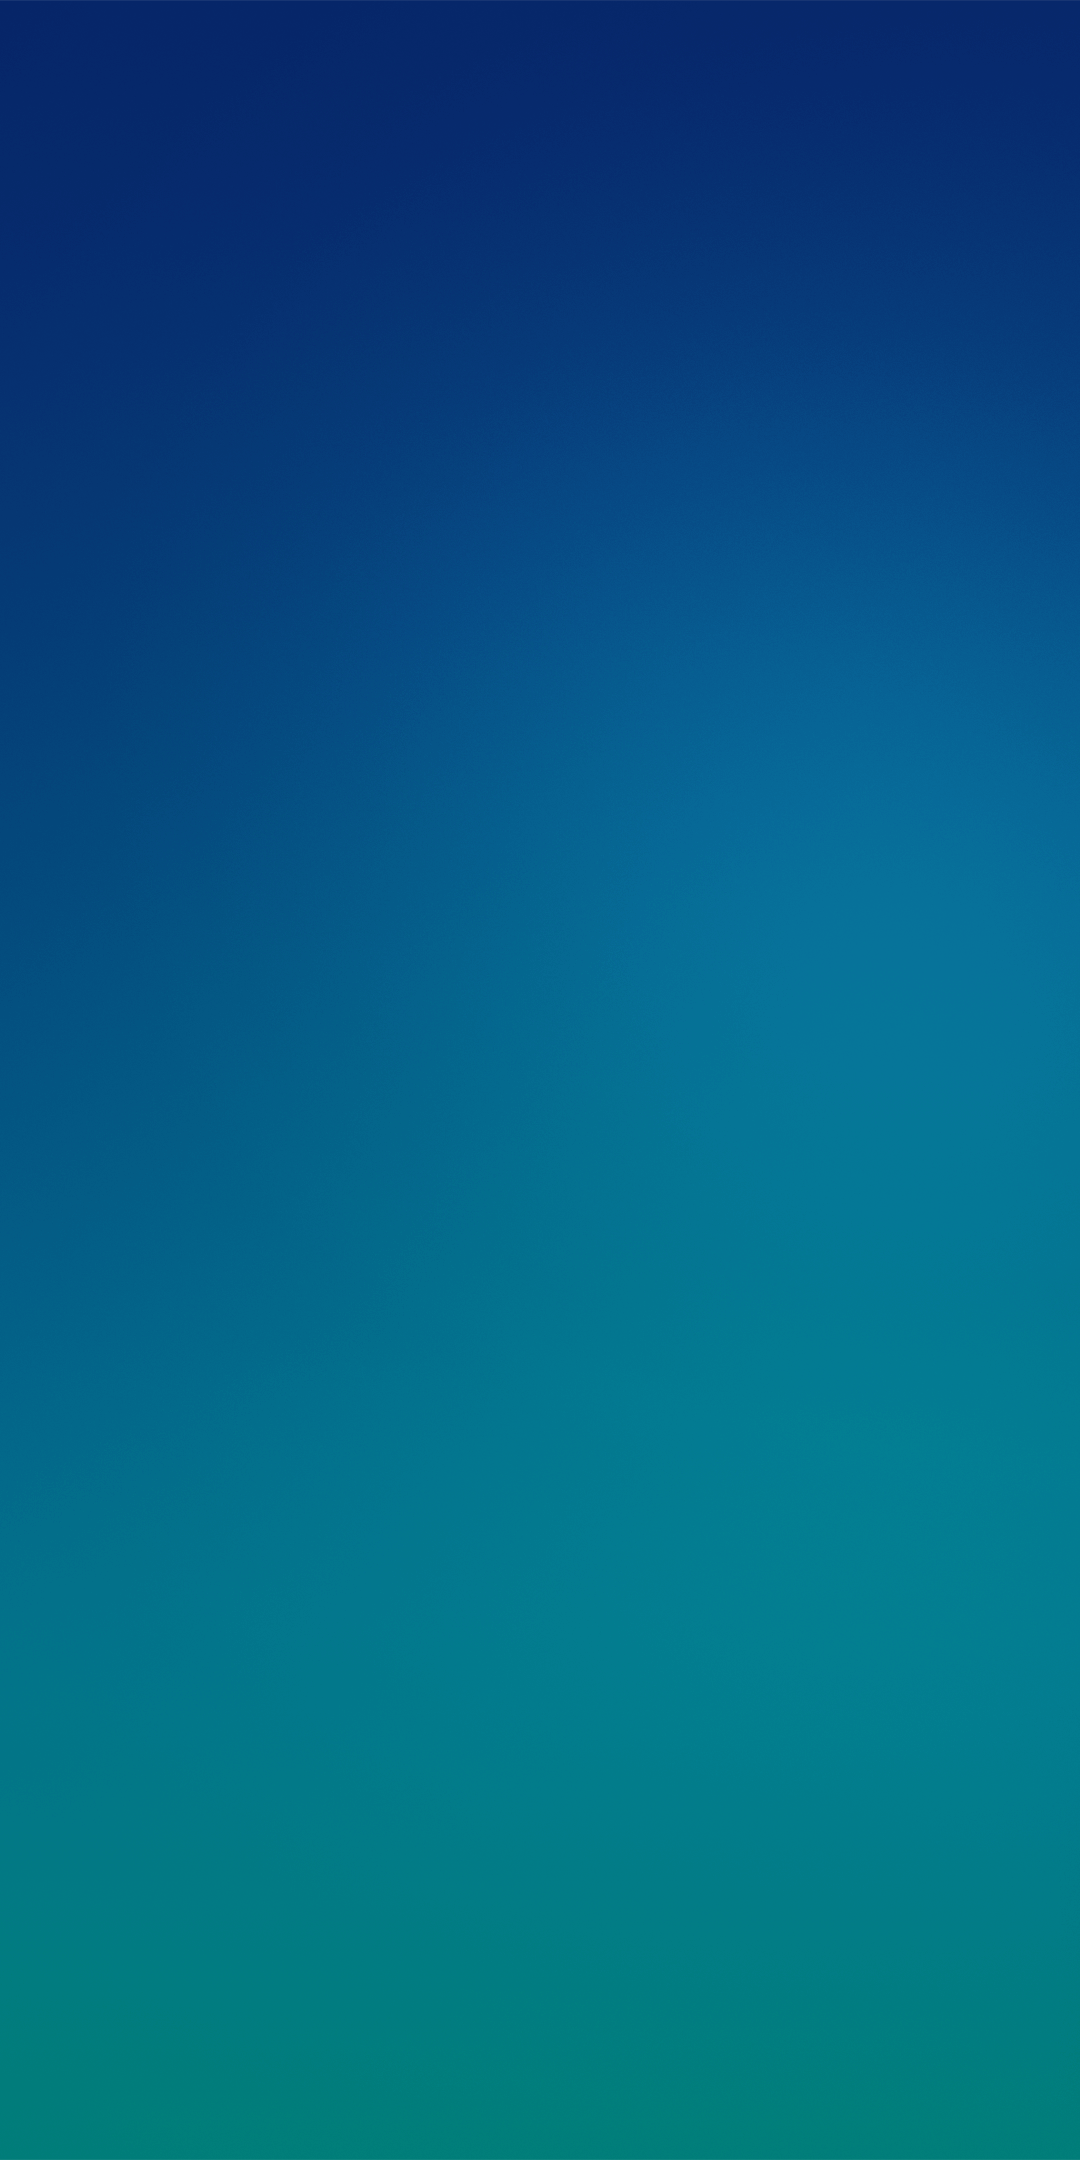 レノボの電話の壁紙,青い,緑,アクア,昼間,空